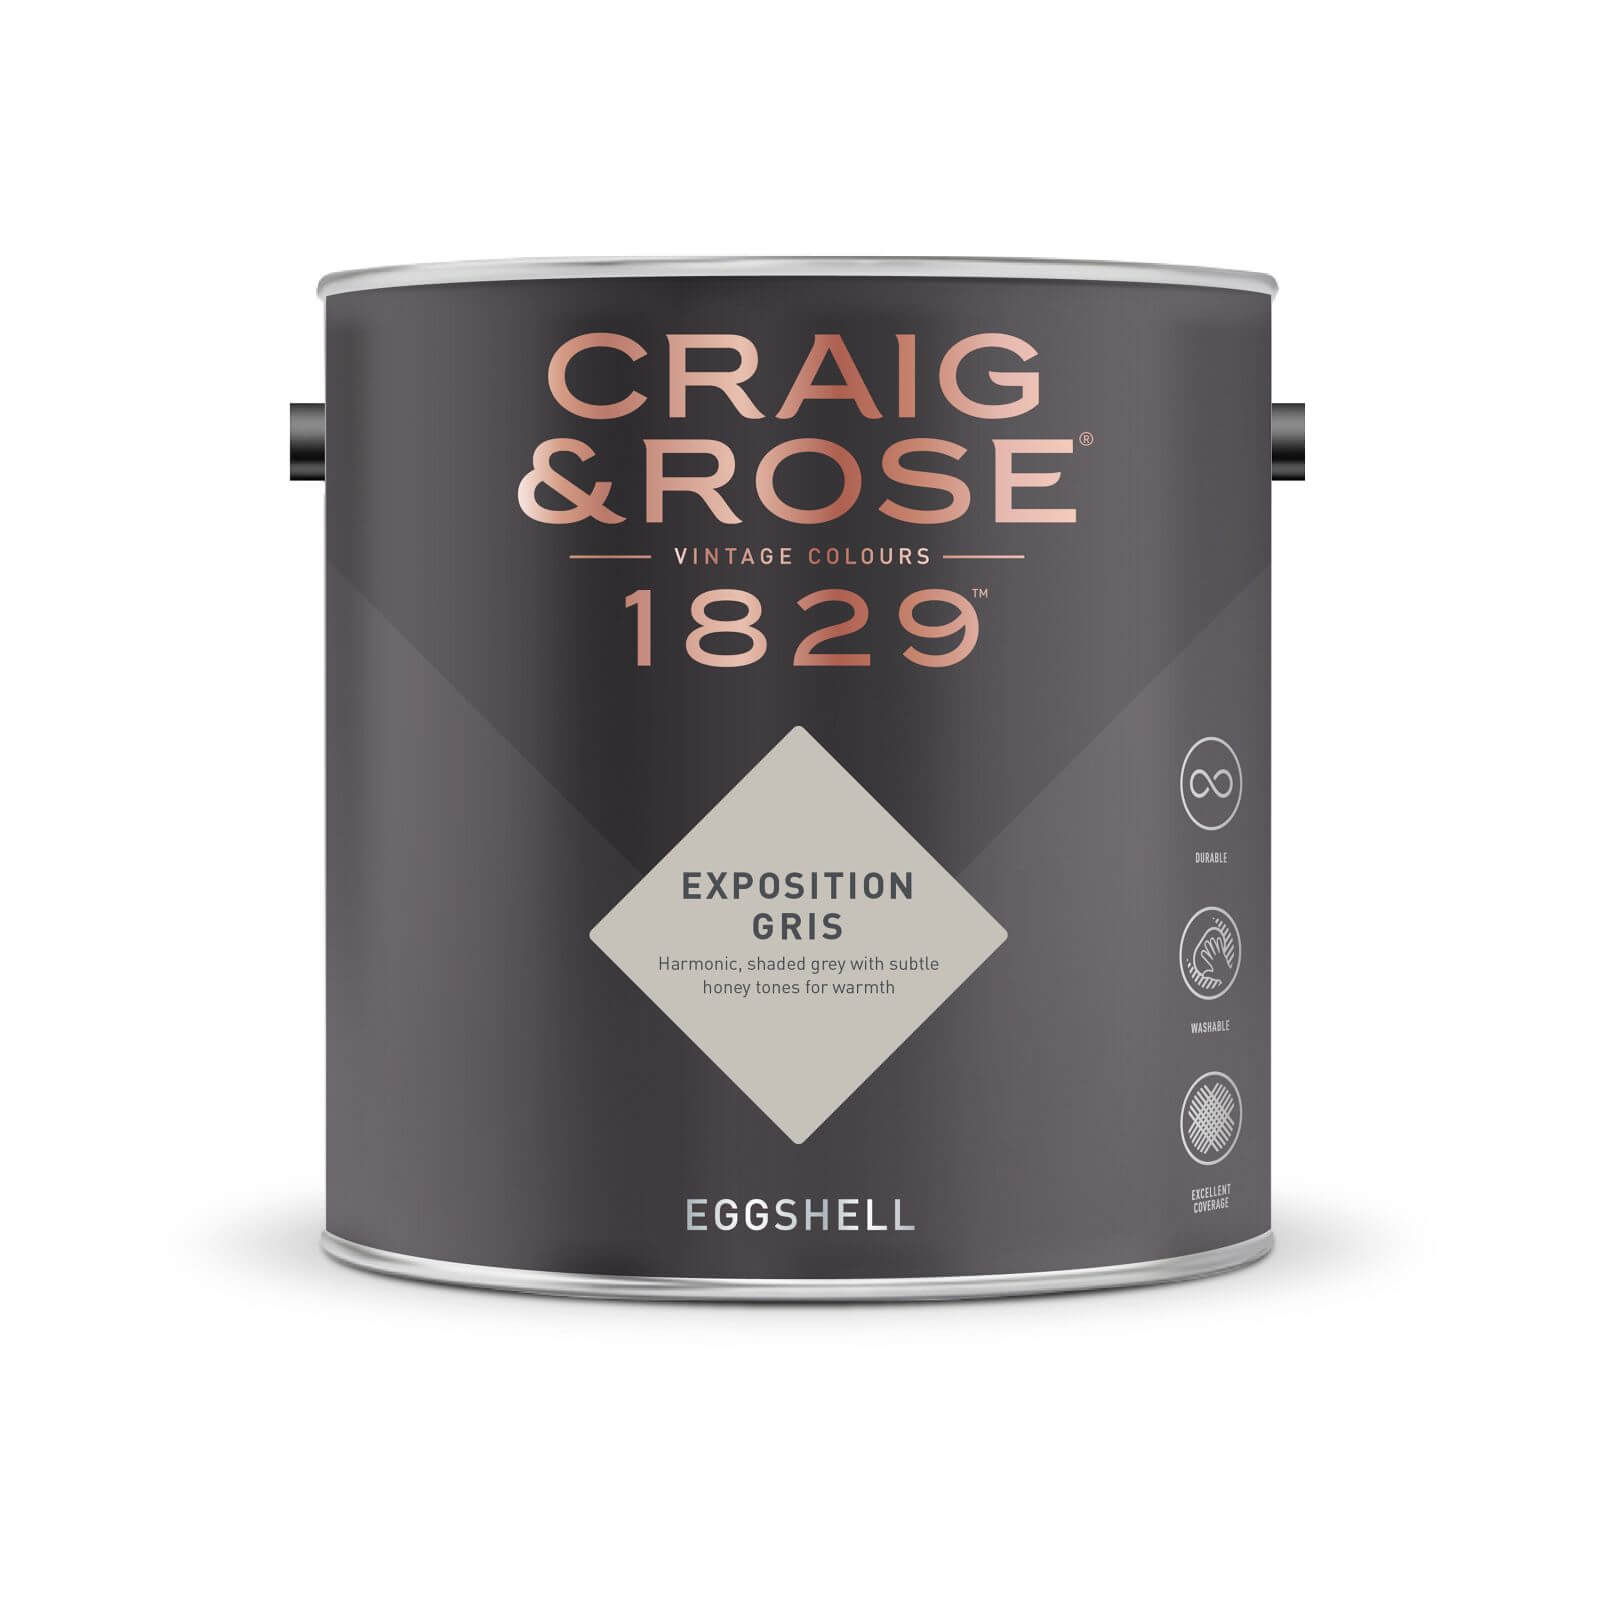 Craig & Rose 1829 Eggshell Paint Exposition Gris - 2.5L